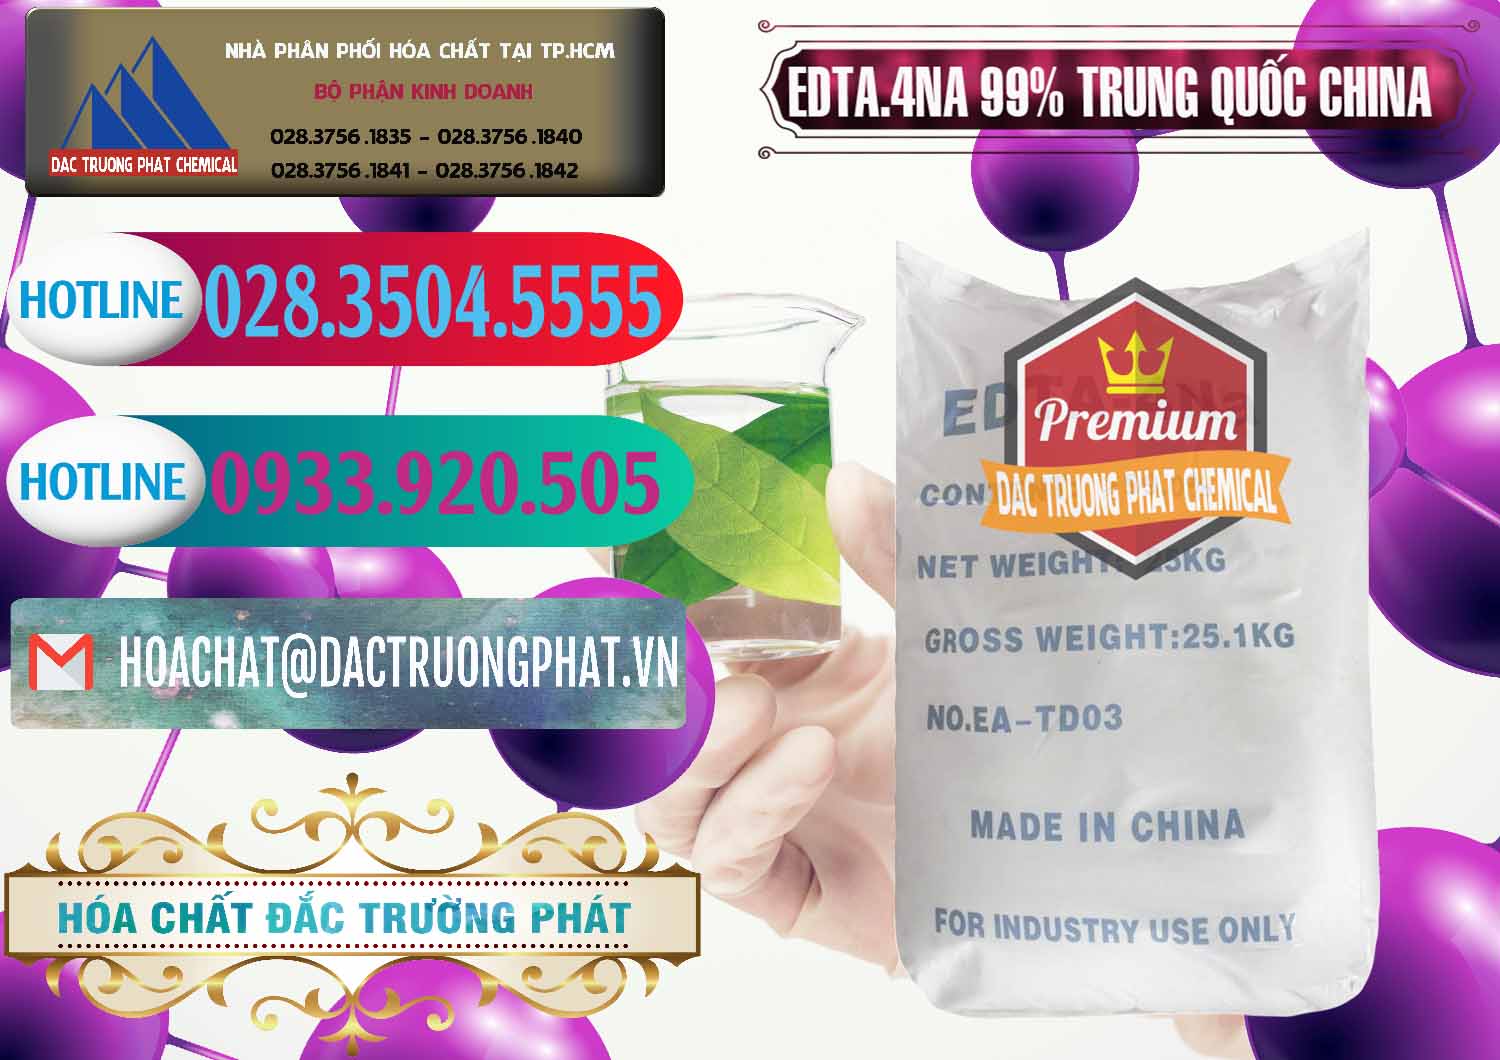 Công ty nhập khẩu & bán EDTA.4NA - EDTA Muối 99% Trung Quốc China - 0292 - Kinh doanh và phân phối hóa chất tại TP.HCM - truongphat.vn